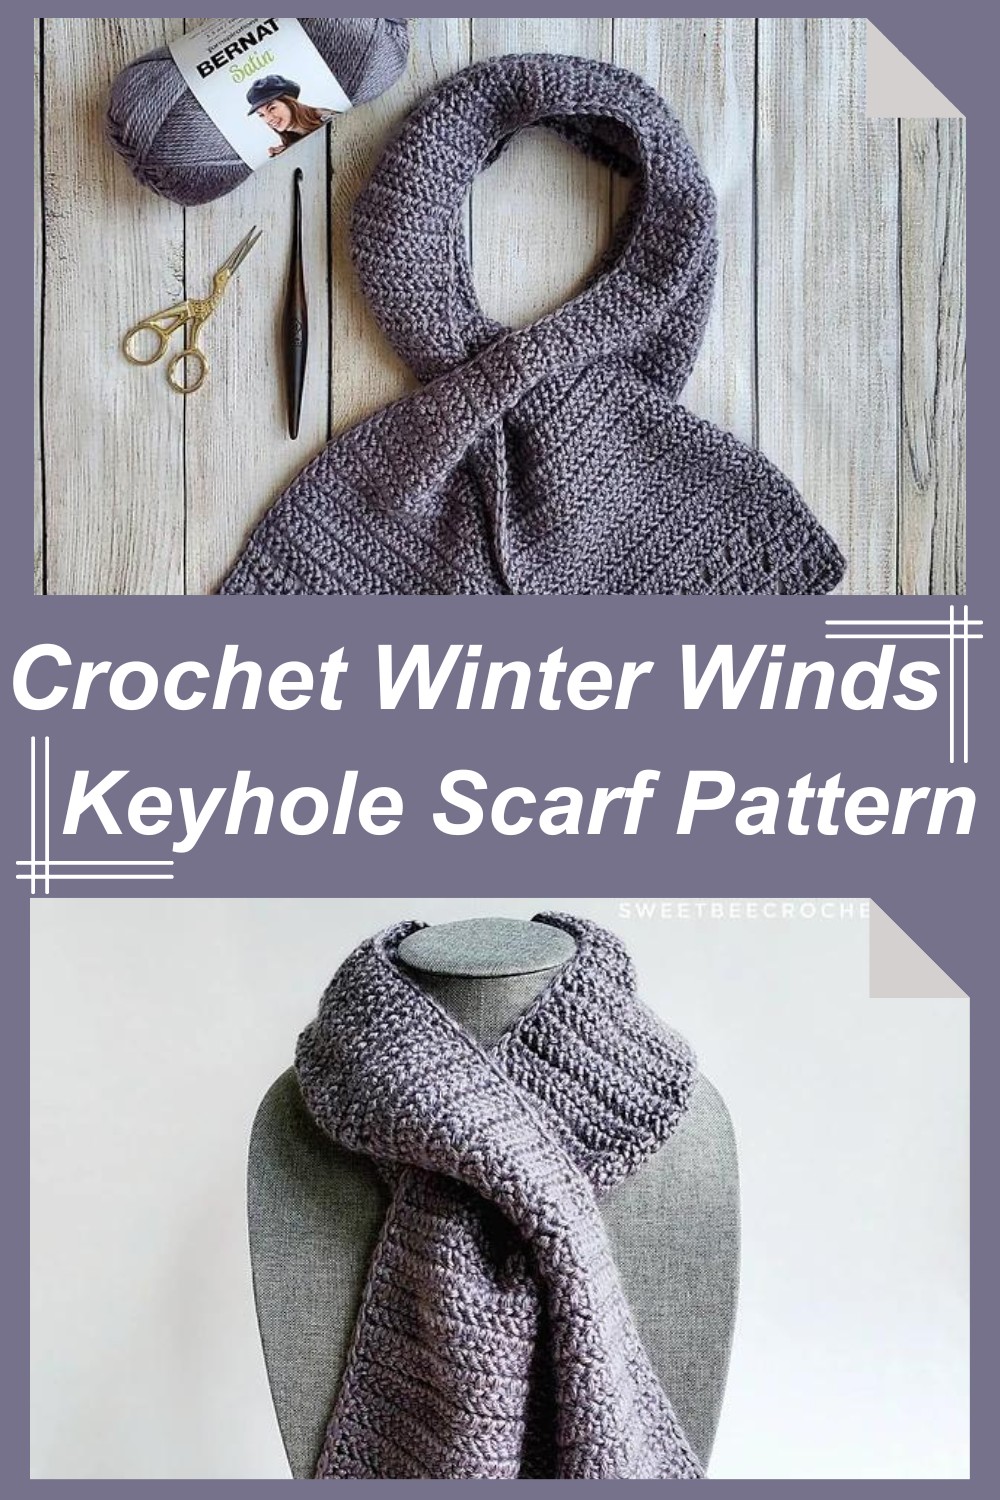 Crochet Winter Winds Keyhole Scarf Pattern